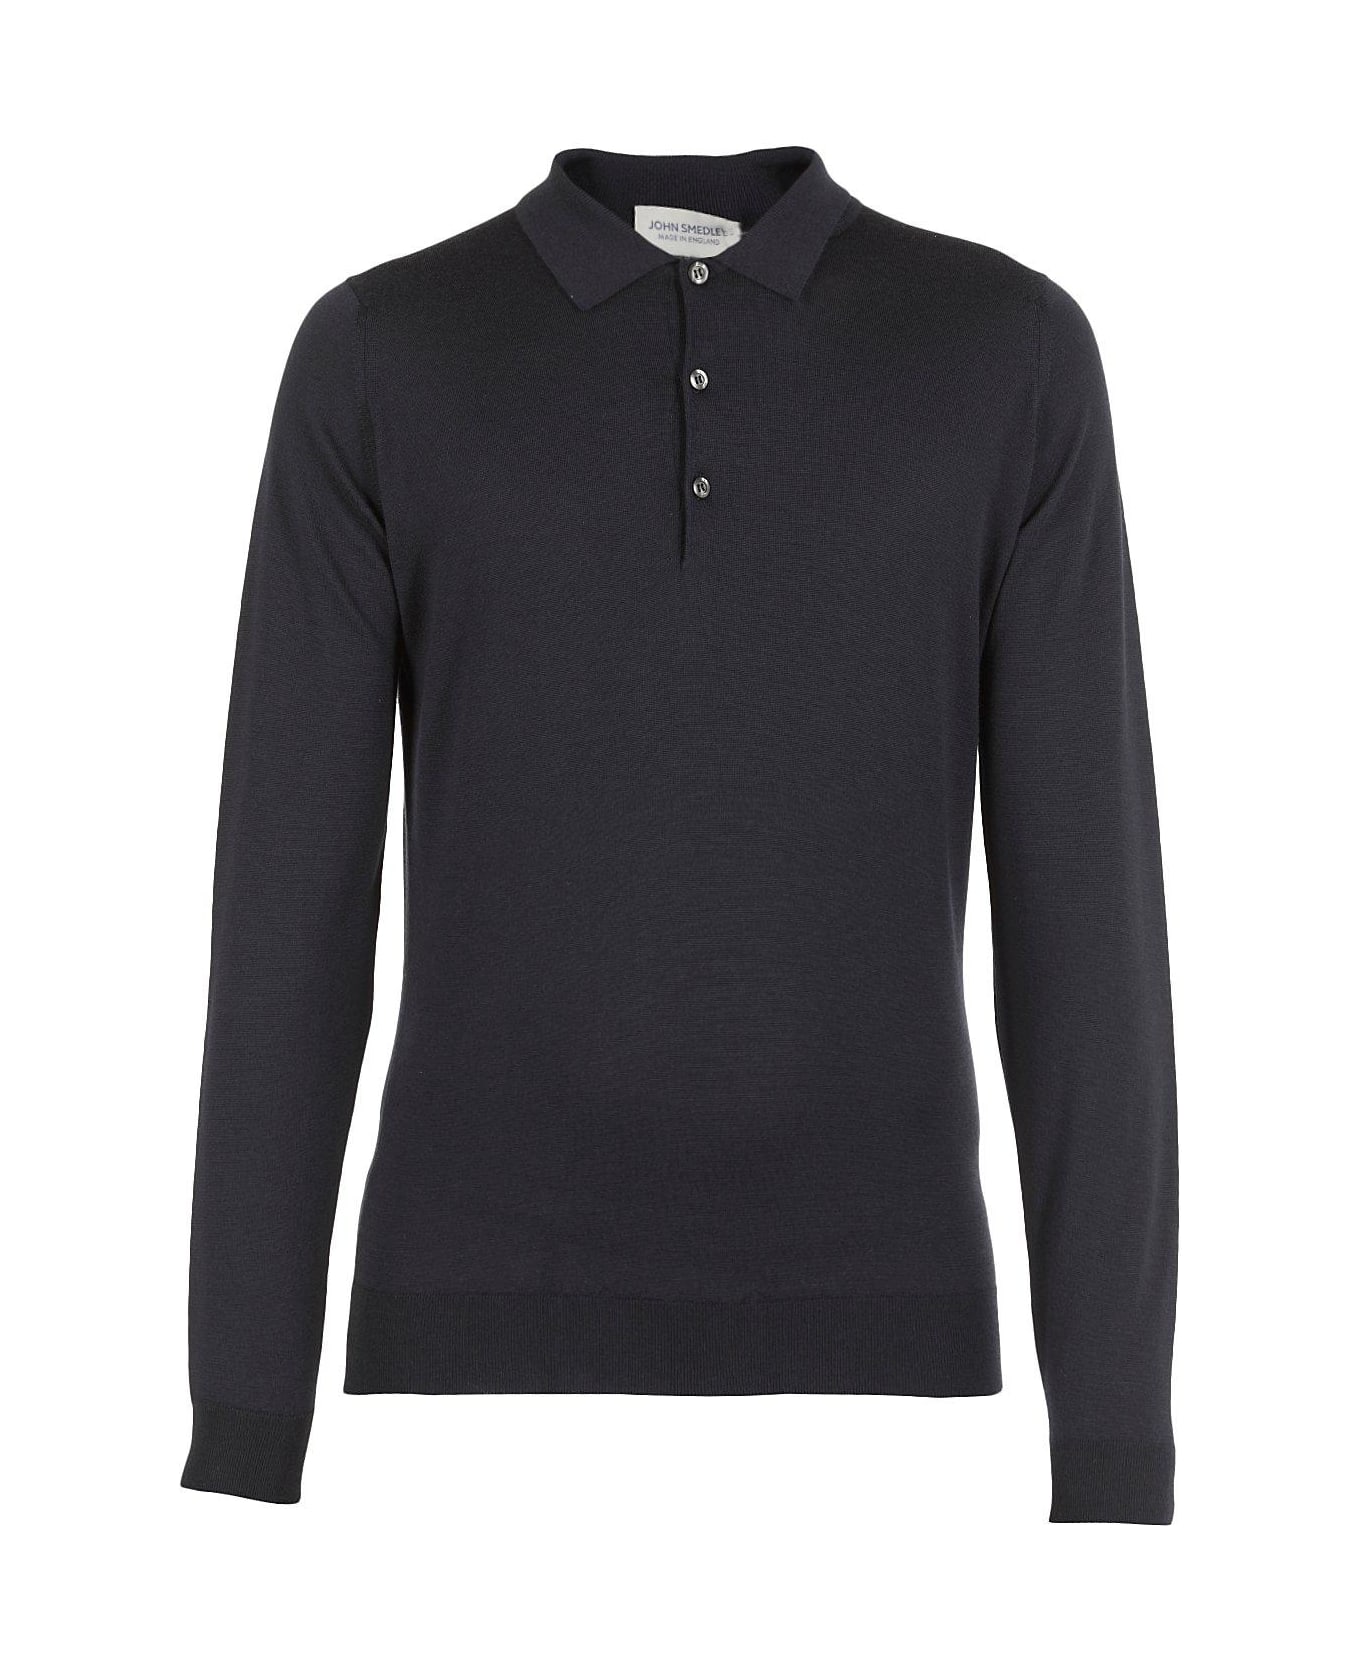 John Smedley Belper Buttoned Knitted Polo Shirt - Midnigt